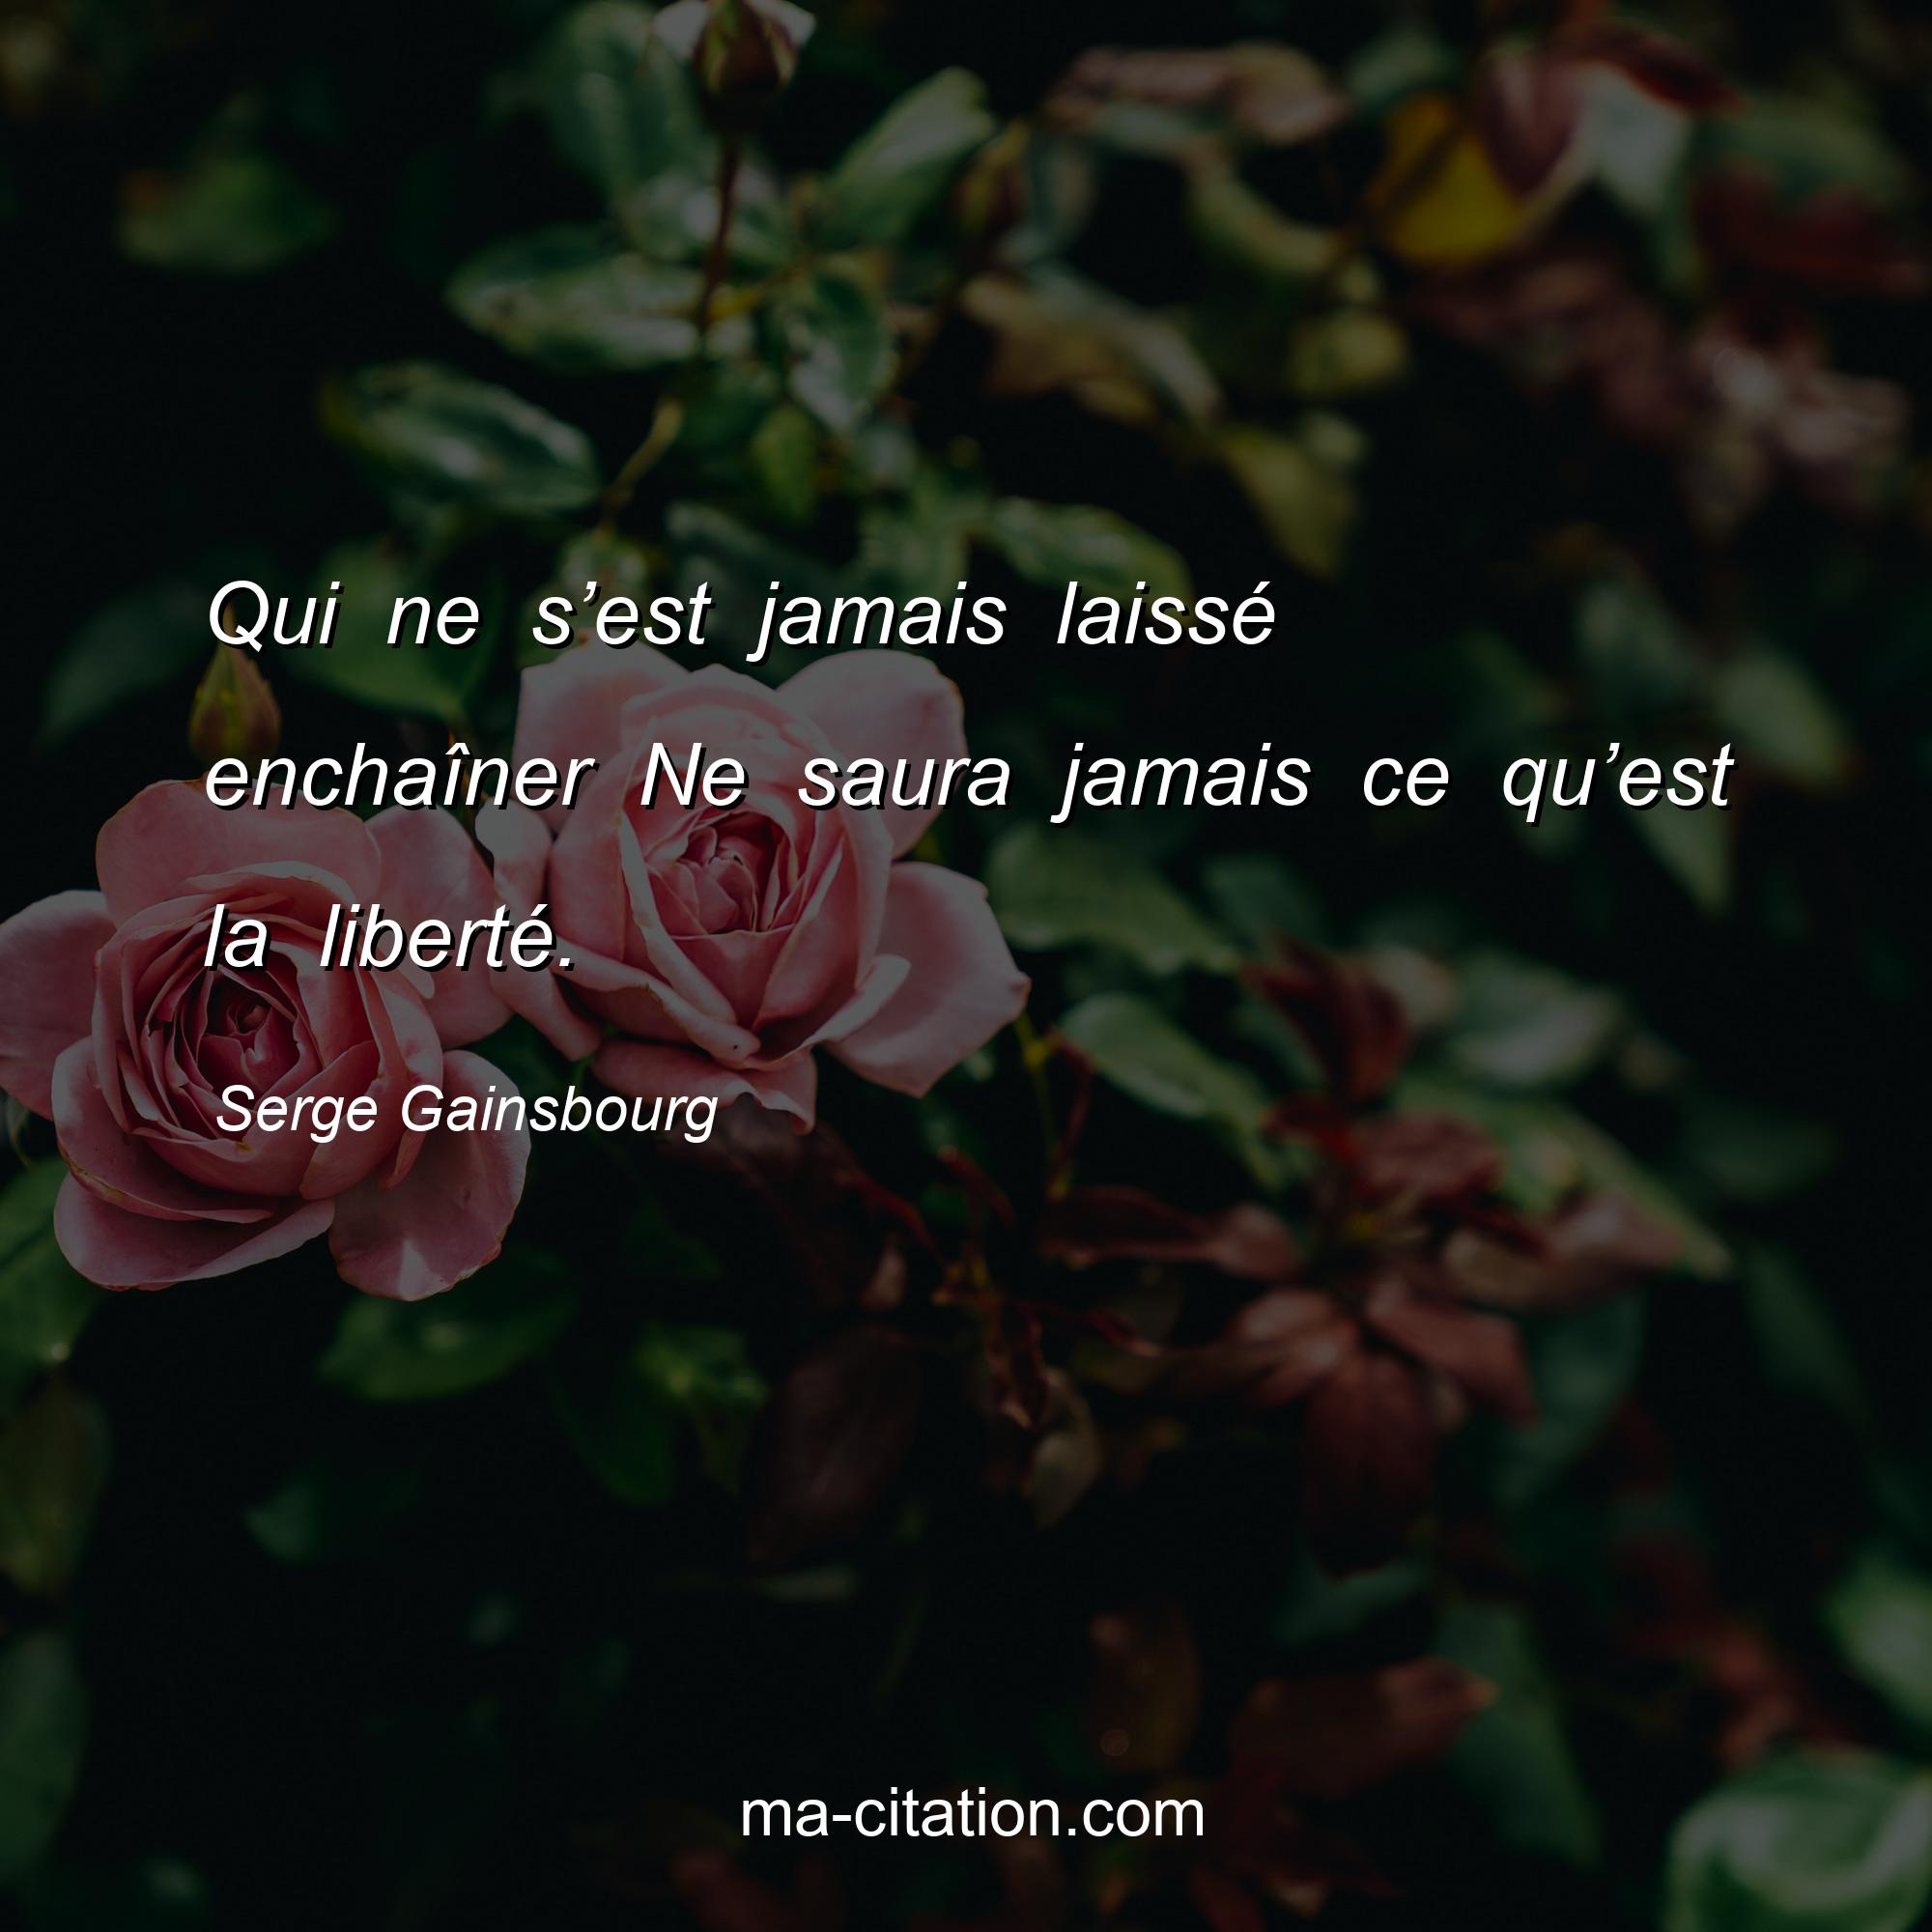 Serge Gainsbourg : Qui ne s’est jamais laissé enchaîner Ne saura jamais ce qu’est la liberté.